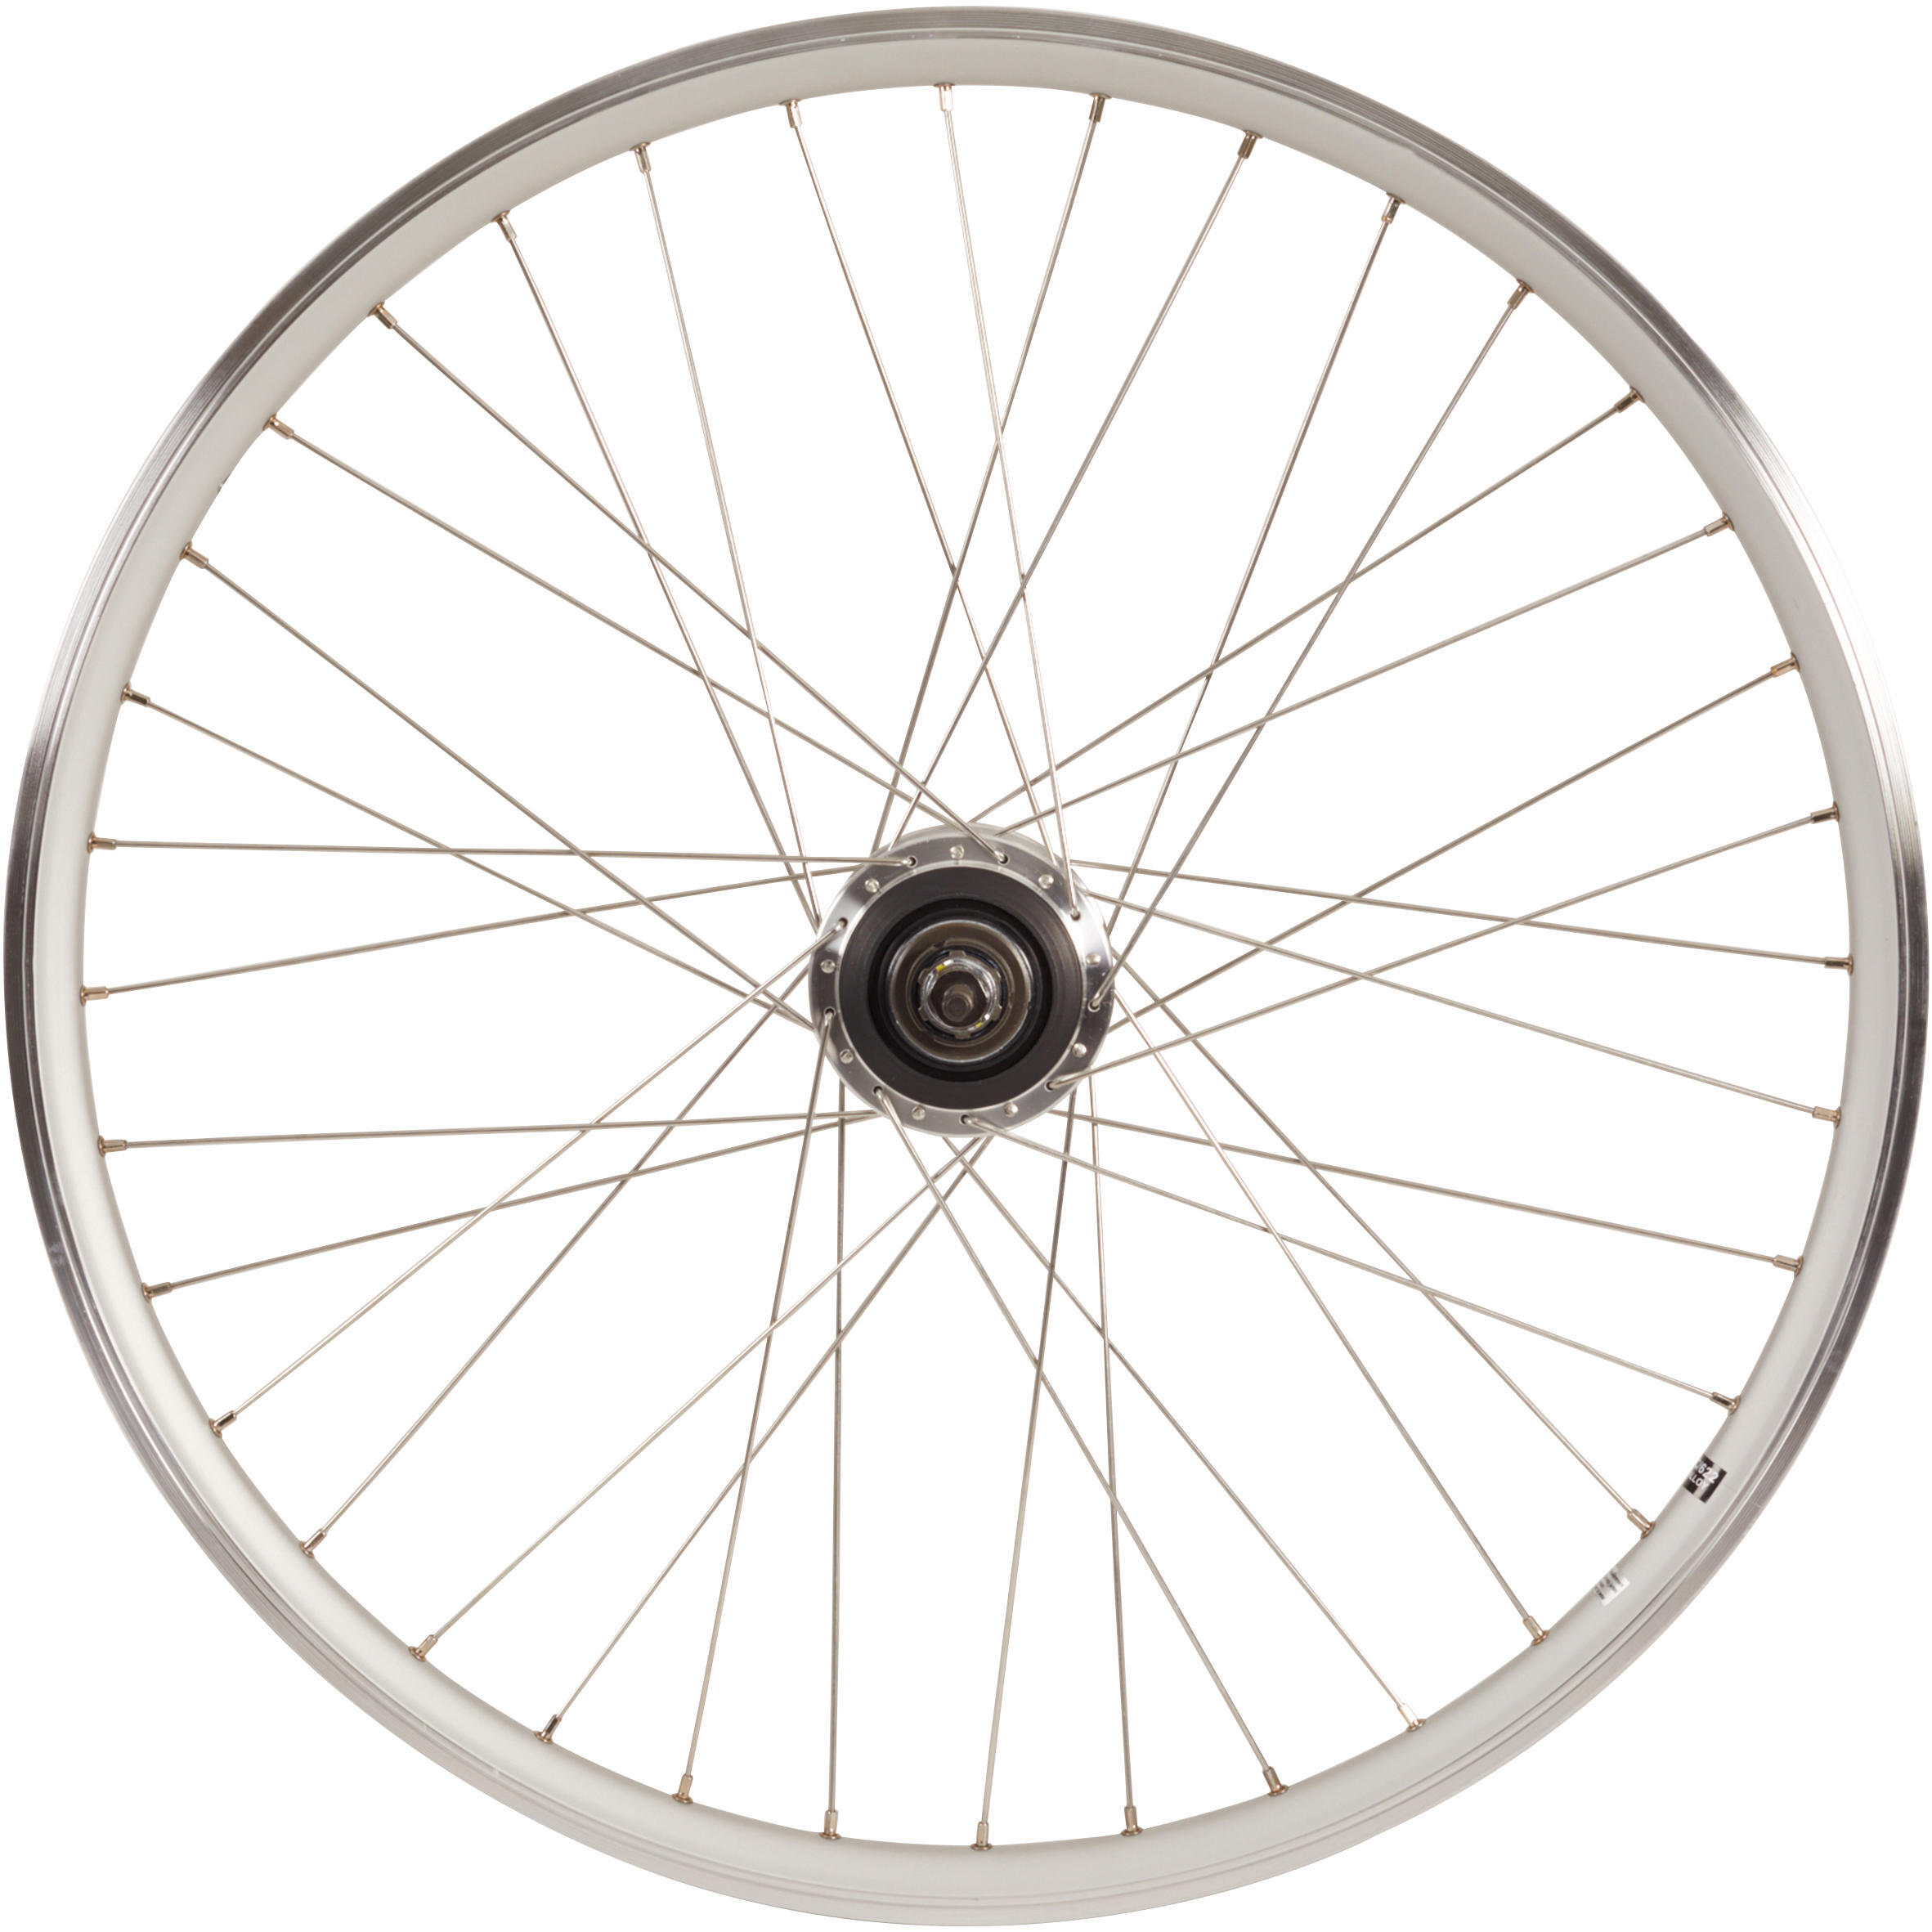 Заднее колесо крыльчатки 28-дюймовый обод для городского велосипеда с двойными стенками Nexus7 серебристый Elops 920, серебро чехол mypads e vano для leagoo z3c